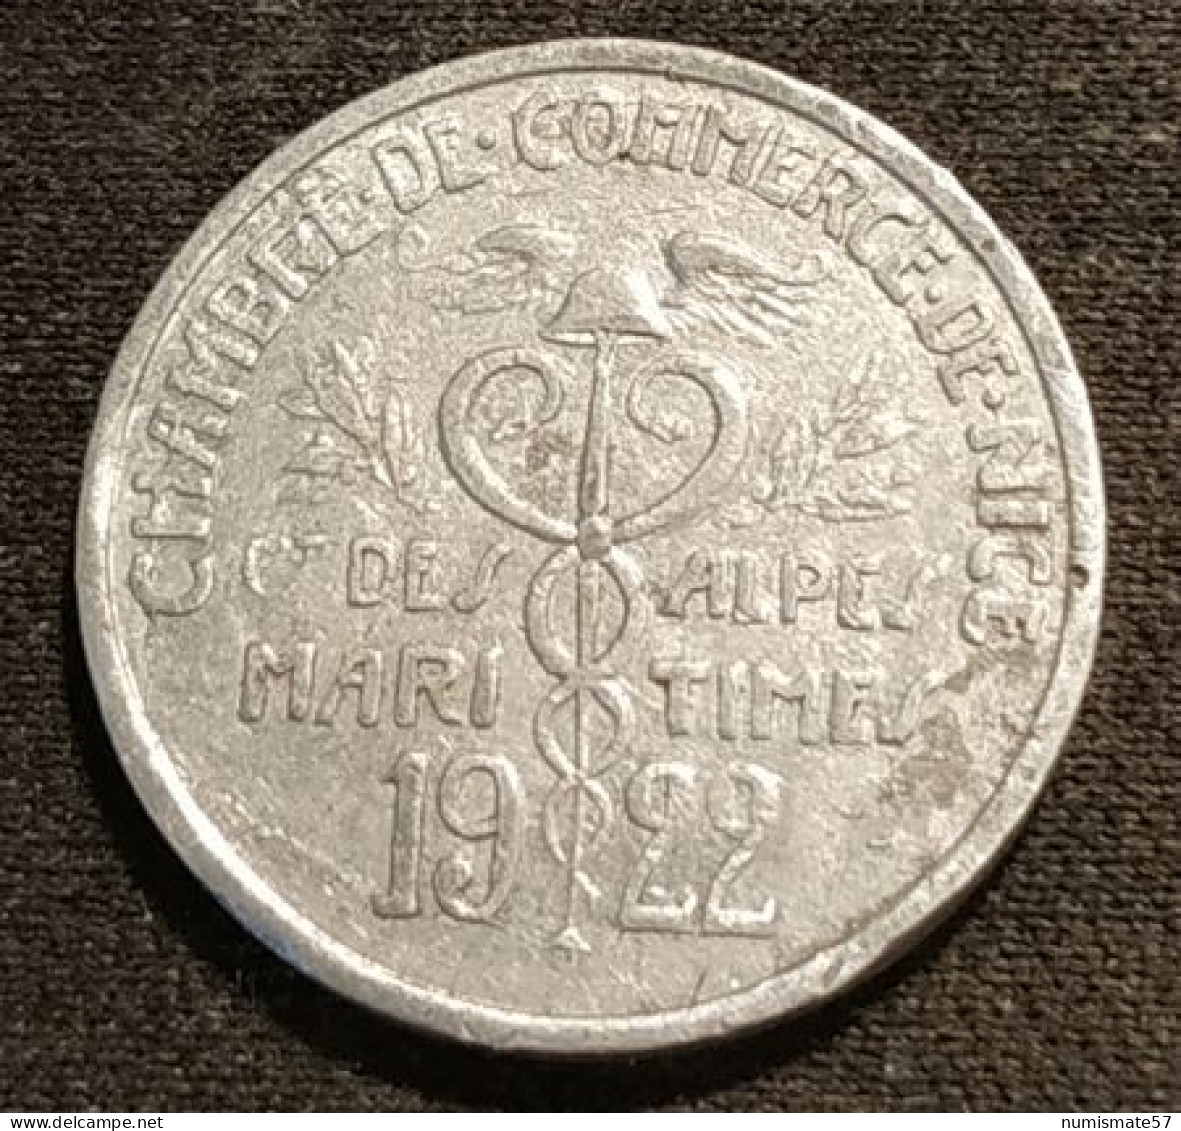 FRANCE - ALPES MARITIMES - 5 CENTIMES 1922 - MONNAIES DE NECESSITE - Chambre De Commerce - Monetary / Of Necessity